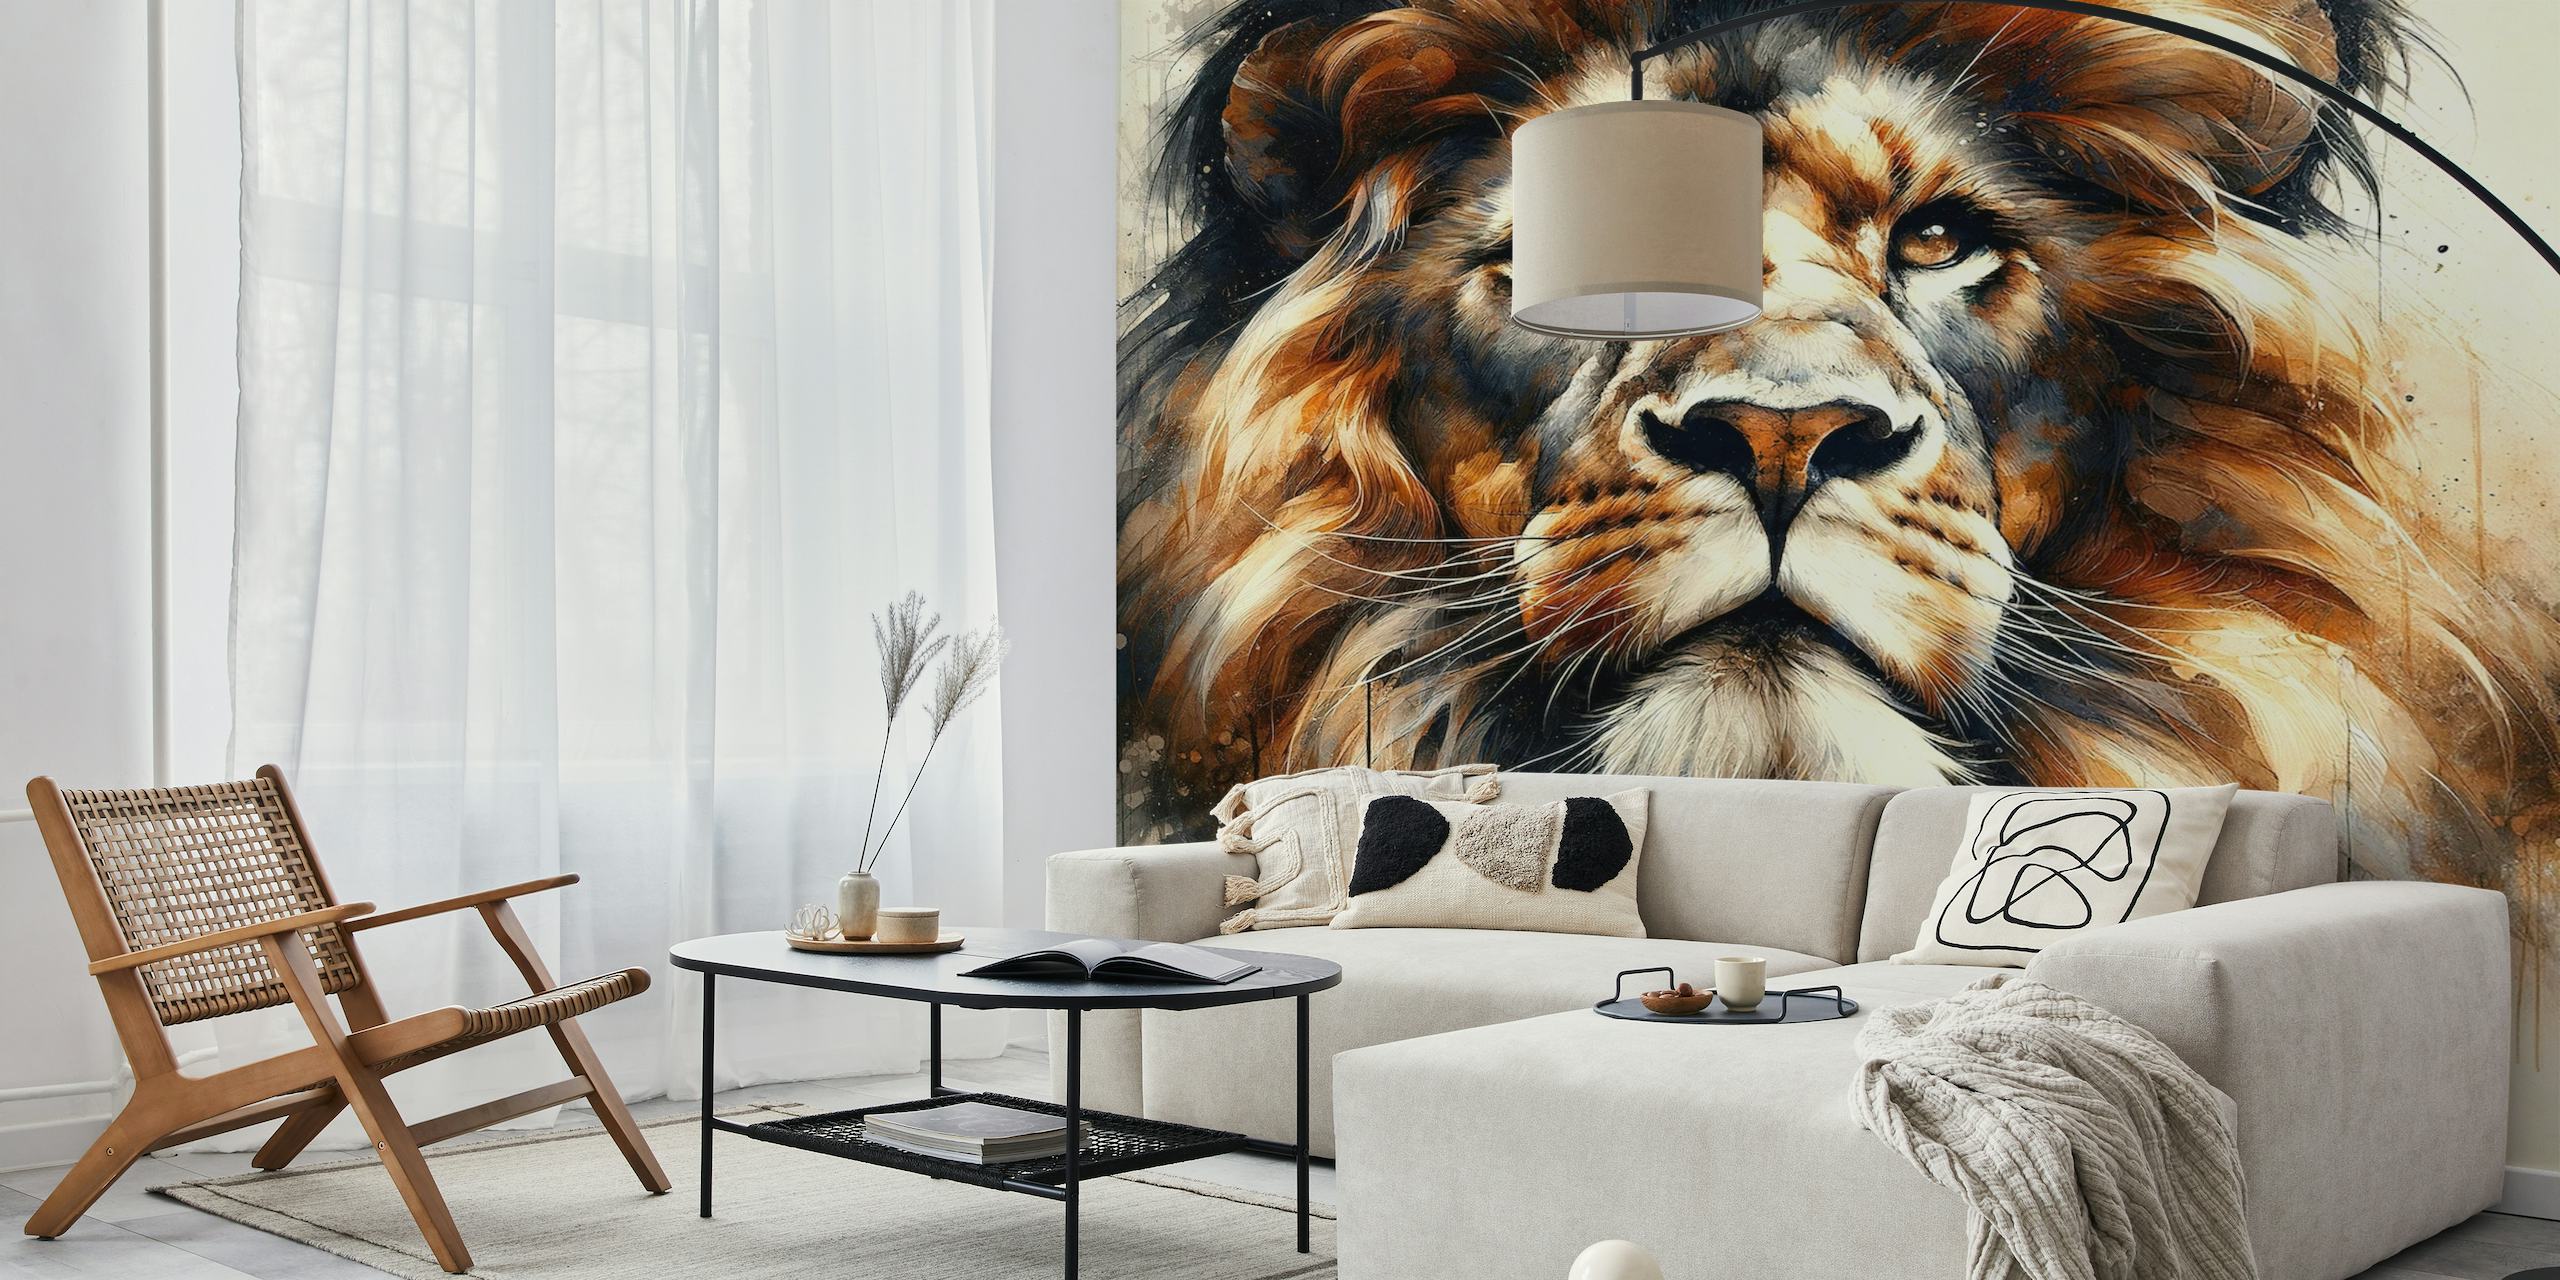 Powerful Lion papel pintado